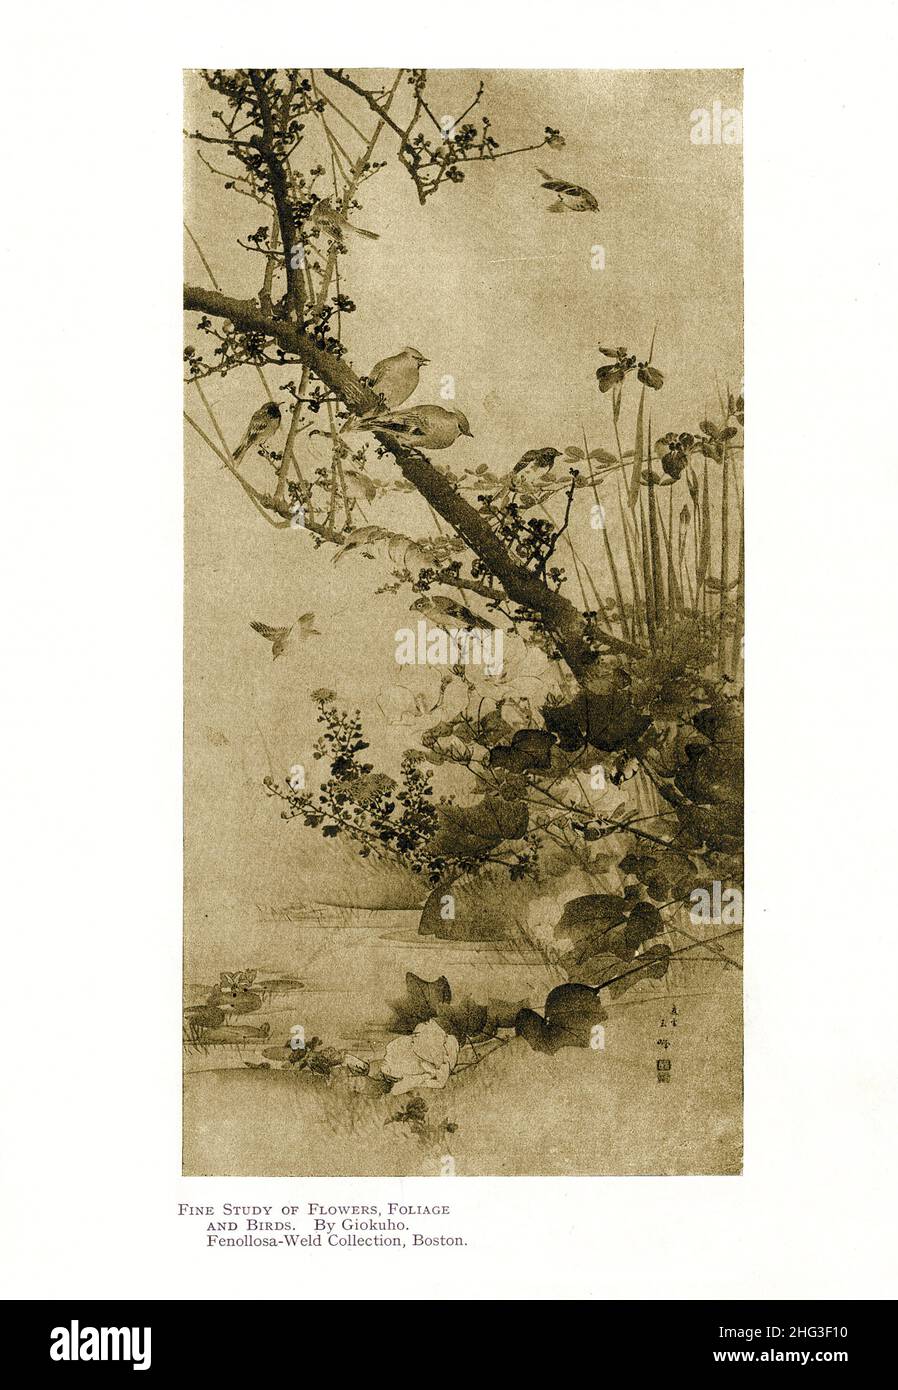 Peinture japonaise du 19th siècle : étude fine des fleurs, des feuillages et des oiseaux.Par Giokuho.Reproduction de l'illustration du livre 1912 Banque D'Images